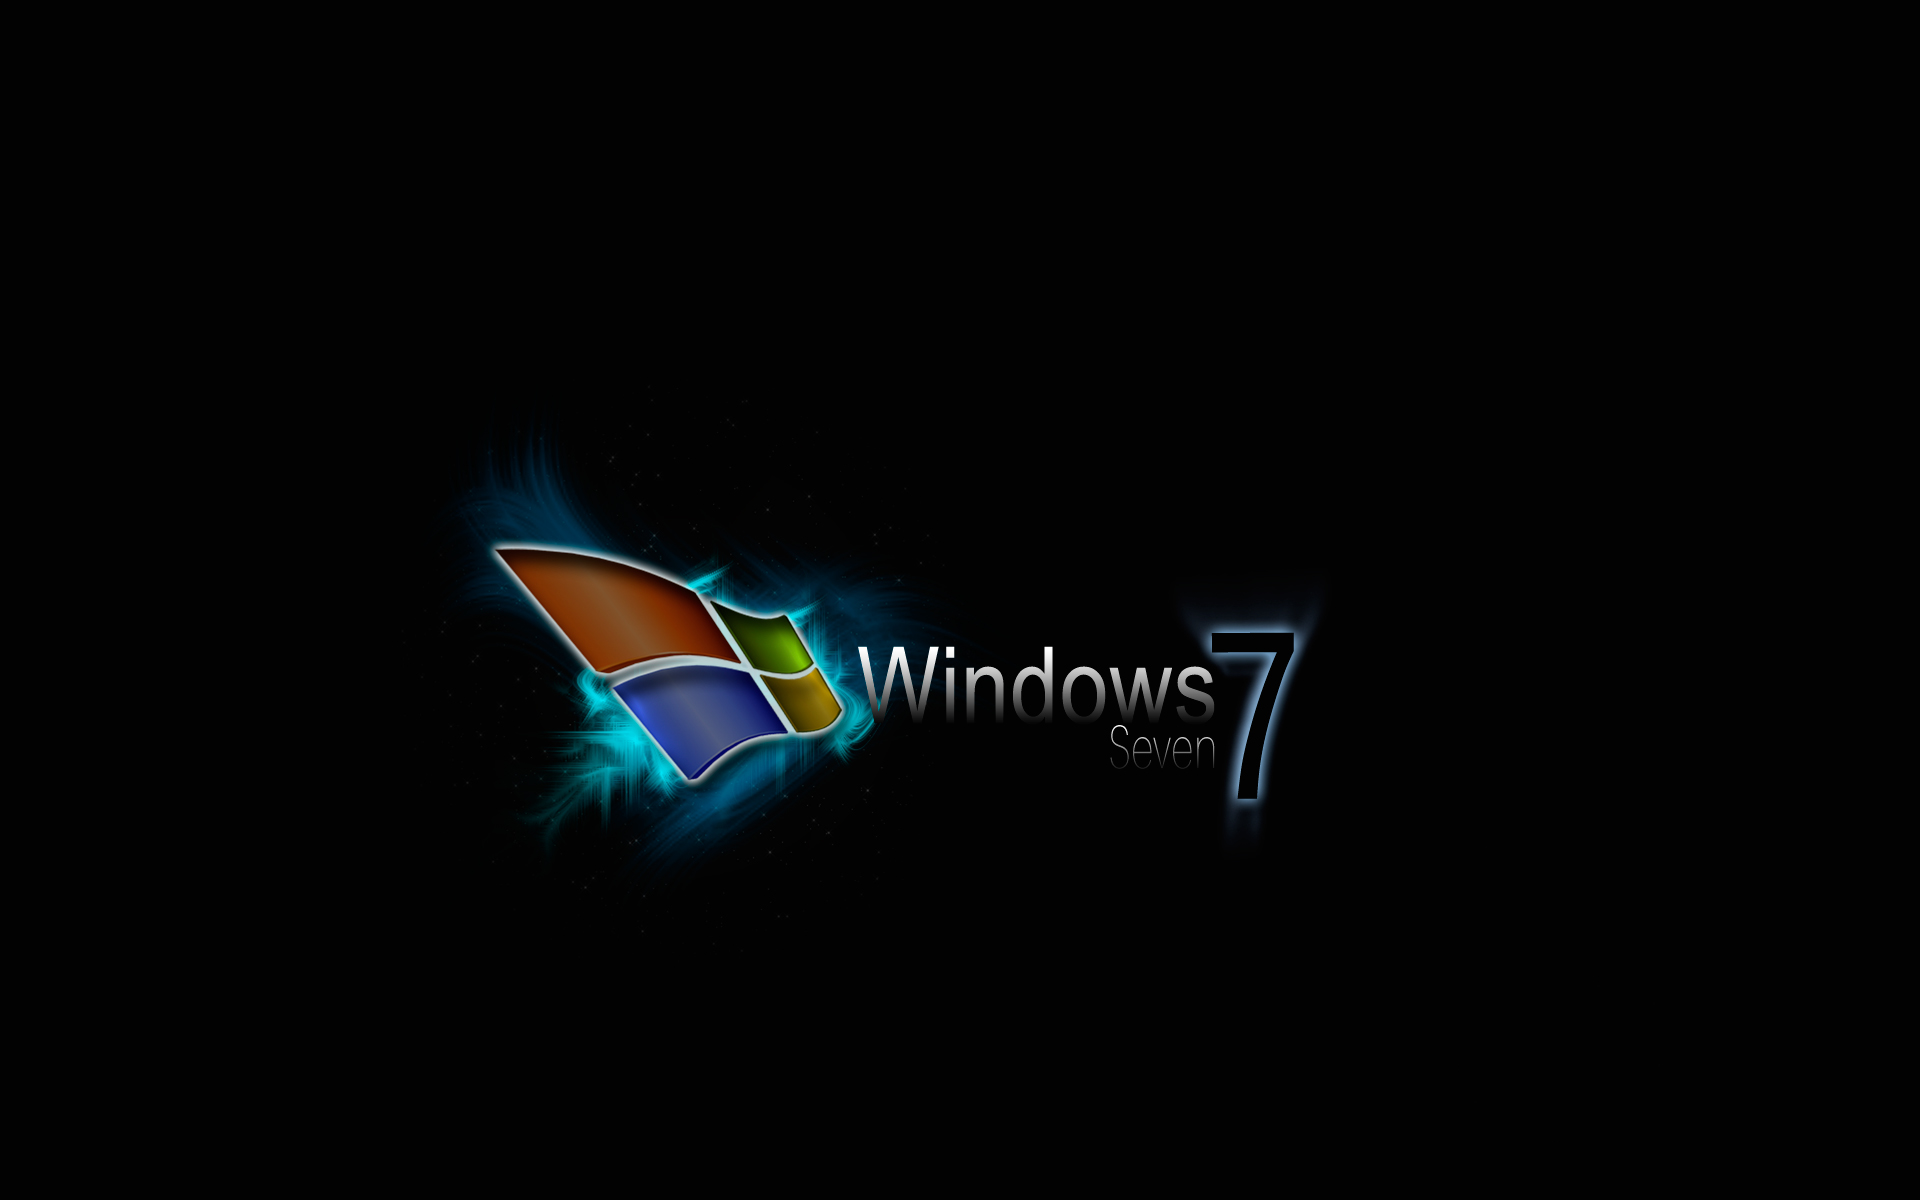 http://fc32.deviantart.com/fs27/f/2008/178/3/1/Windows_7_Wallpapers_by_vertone.jpg